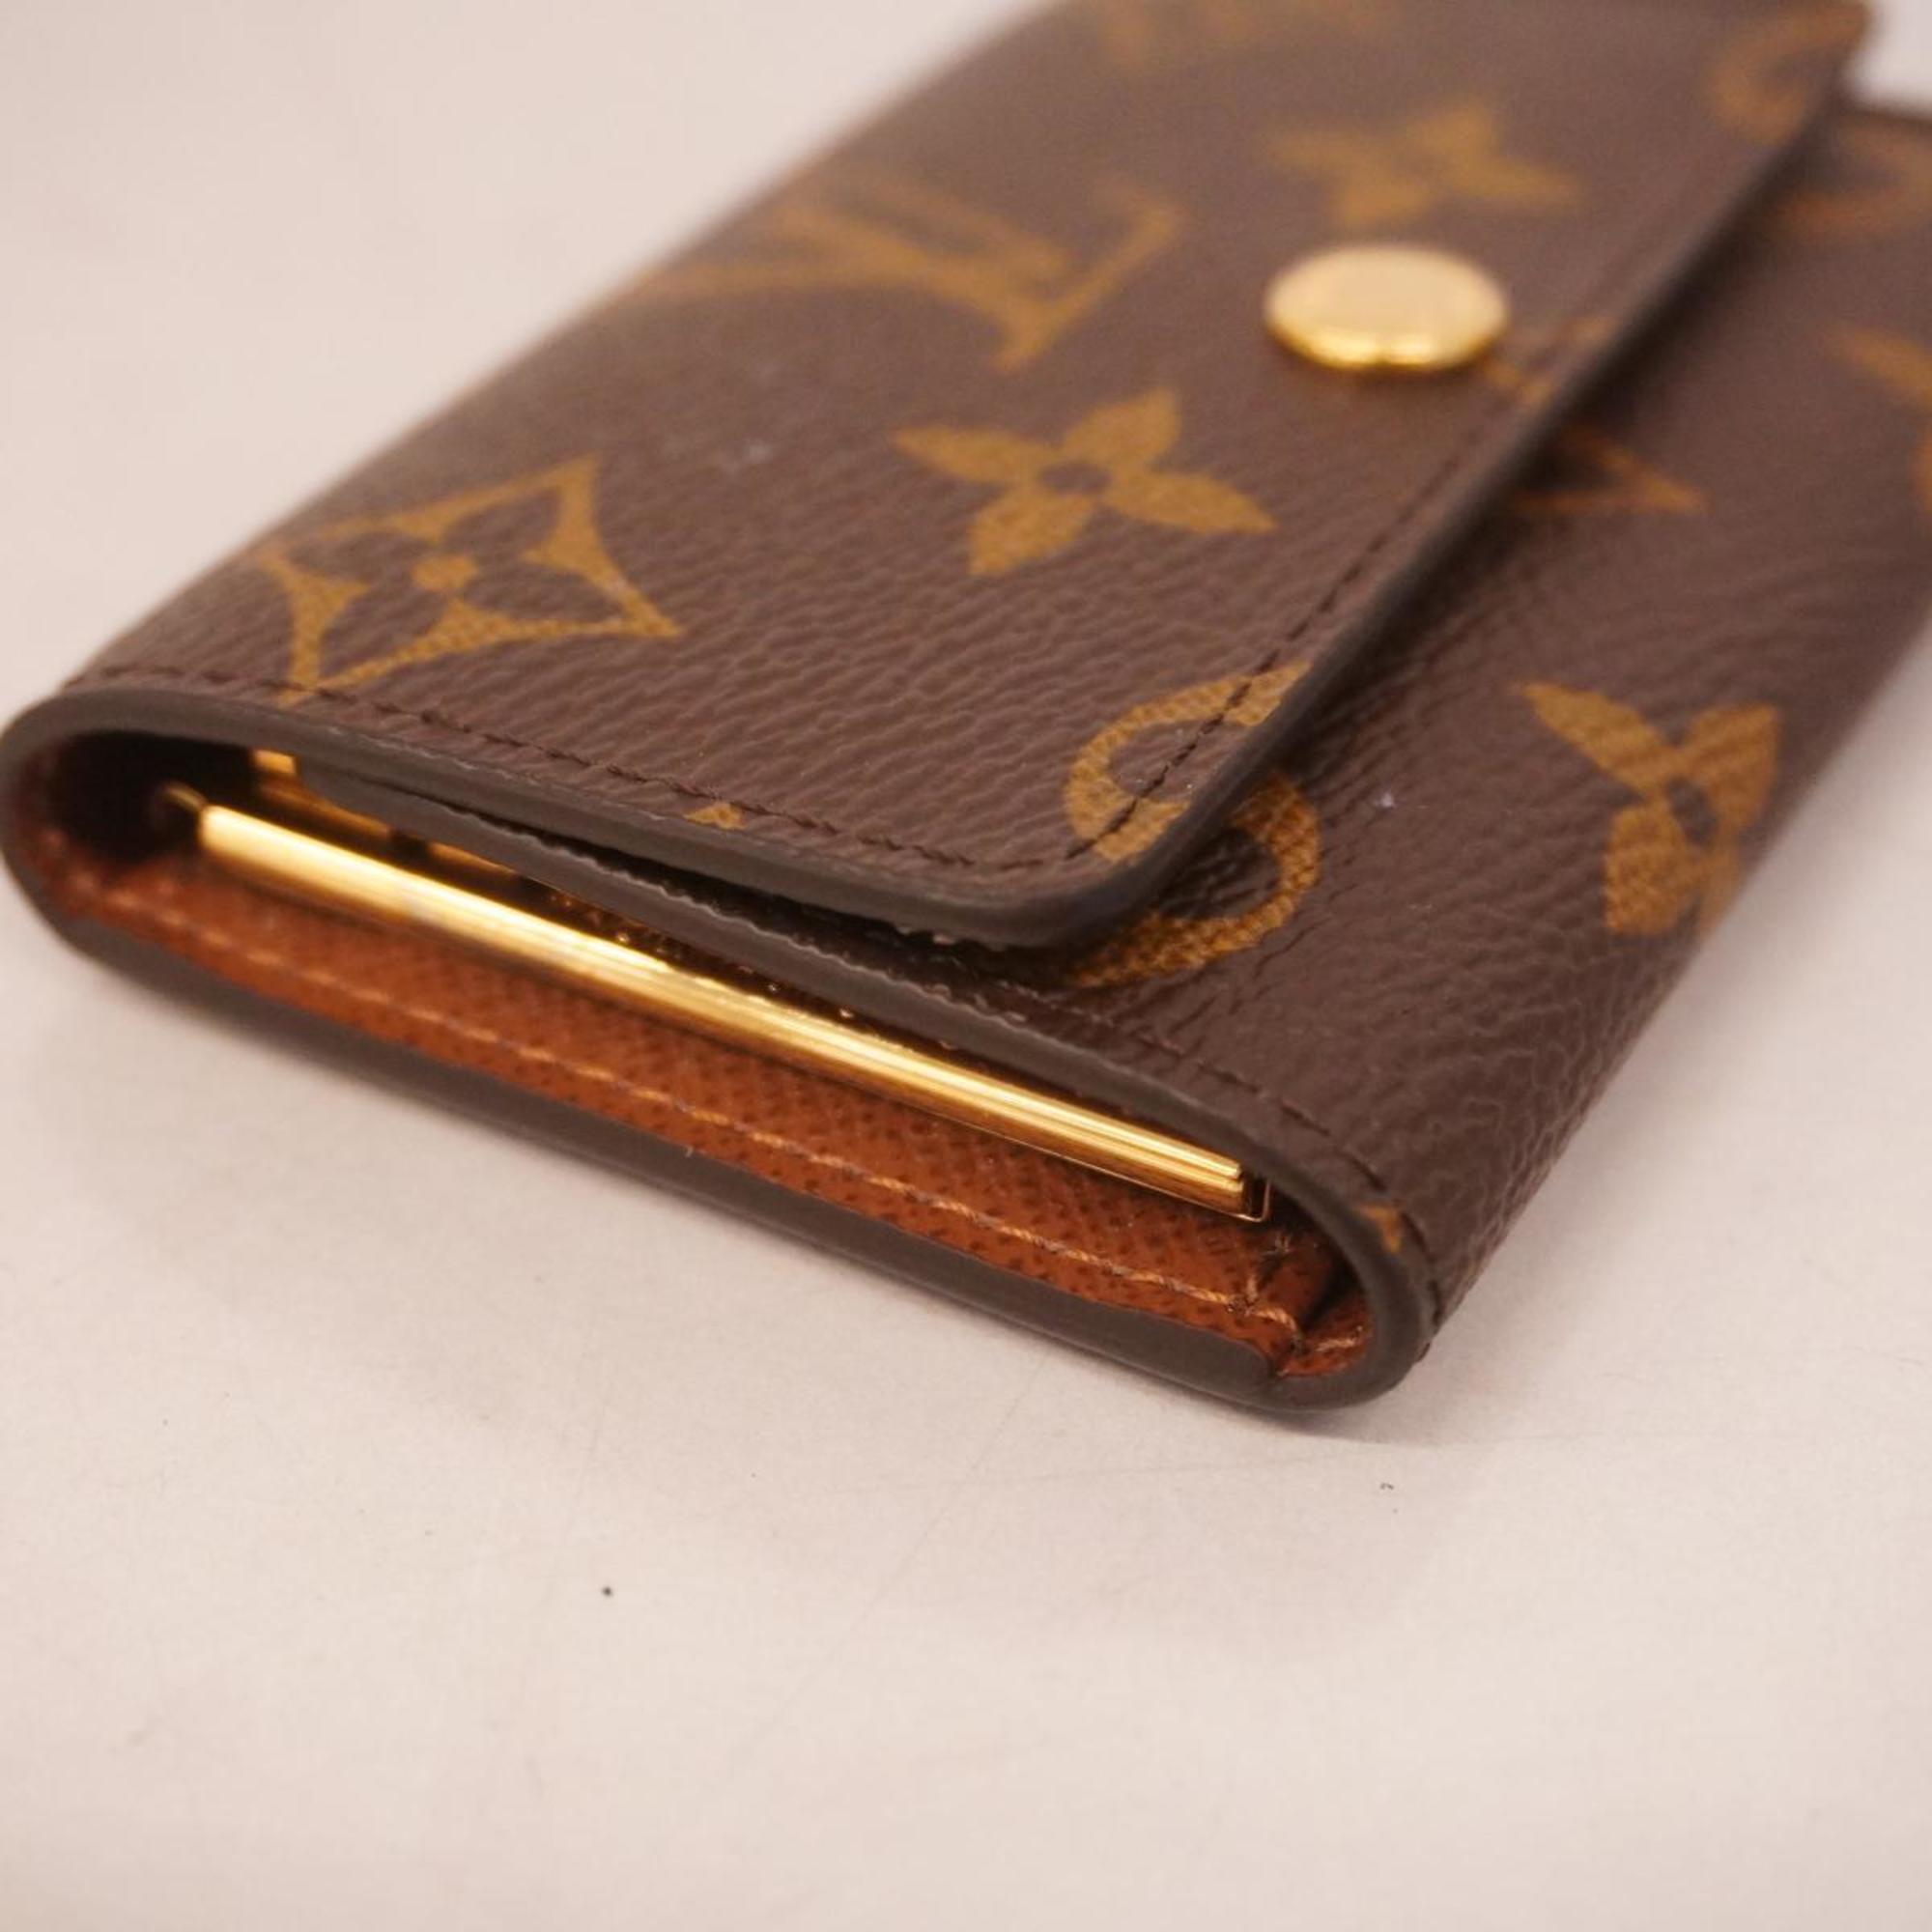 Louis Vuitton Key Case Monogram Multicle 6 M62630 Brown Men's Women's